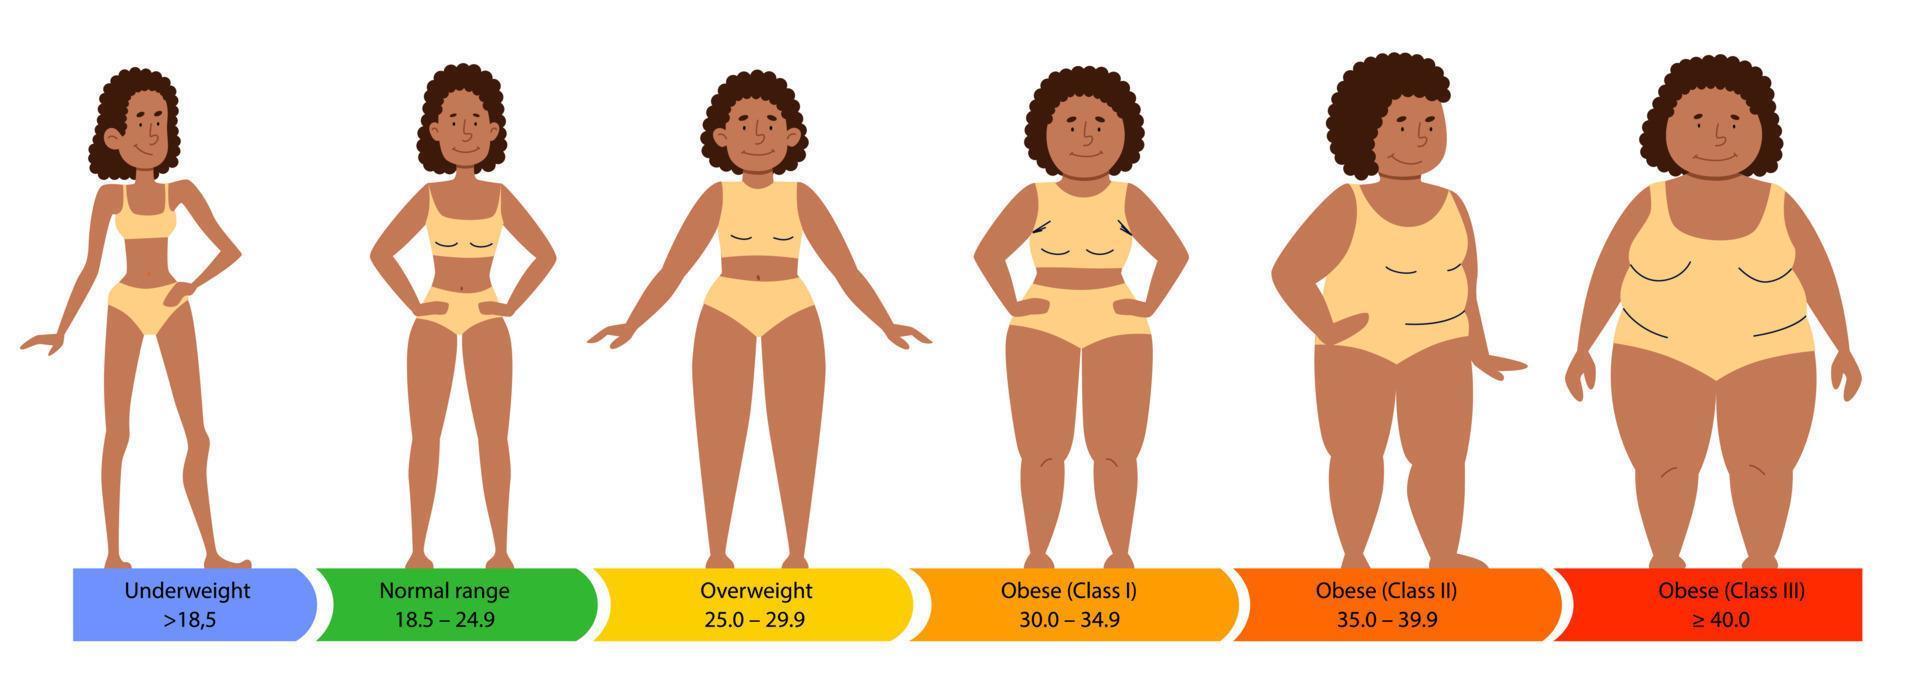 catégories avec indice de masse corporelle. silhouettes féminines d'une femme afro-américaine avec une silhouette grasse, normale et élancée. vecteur